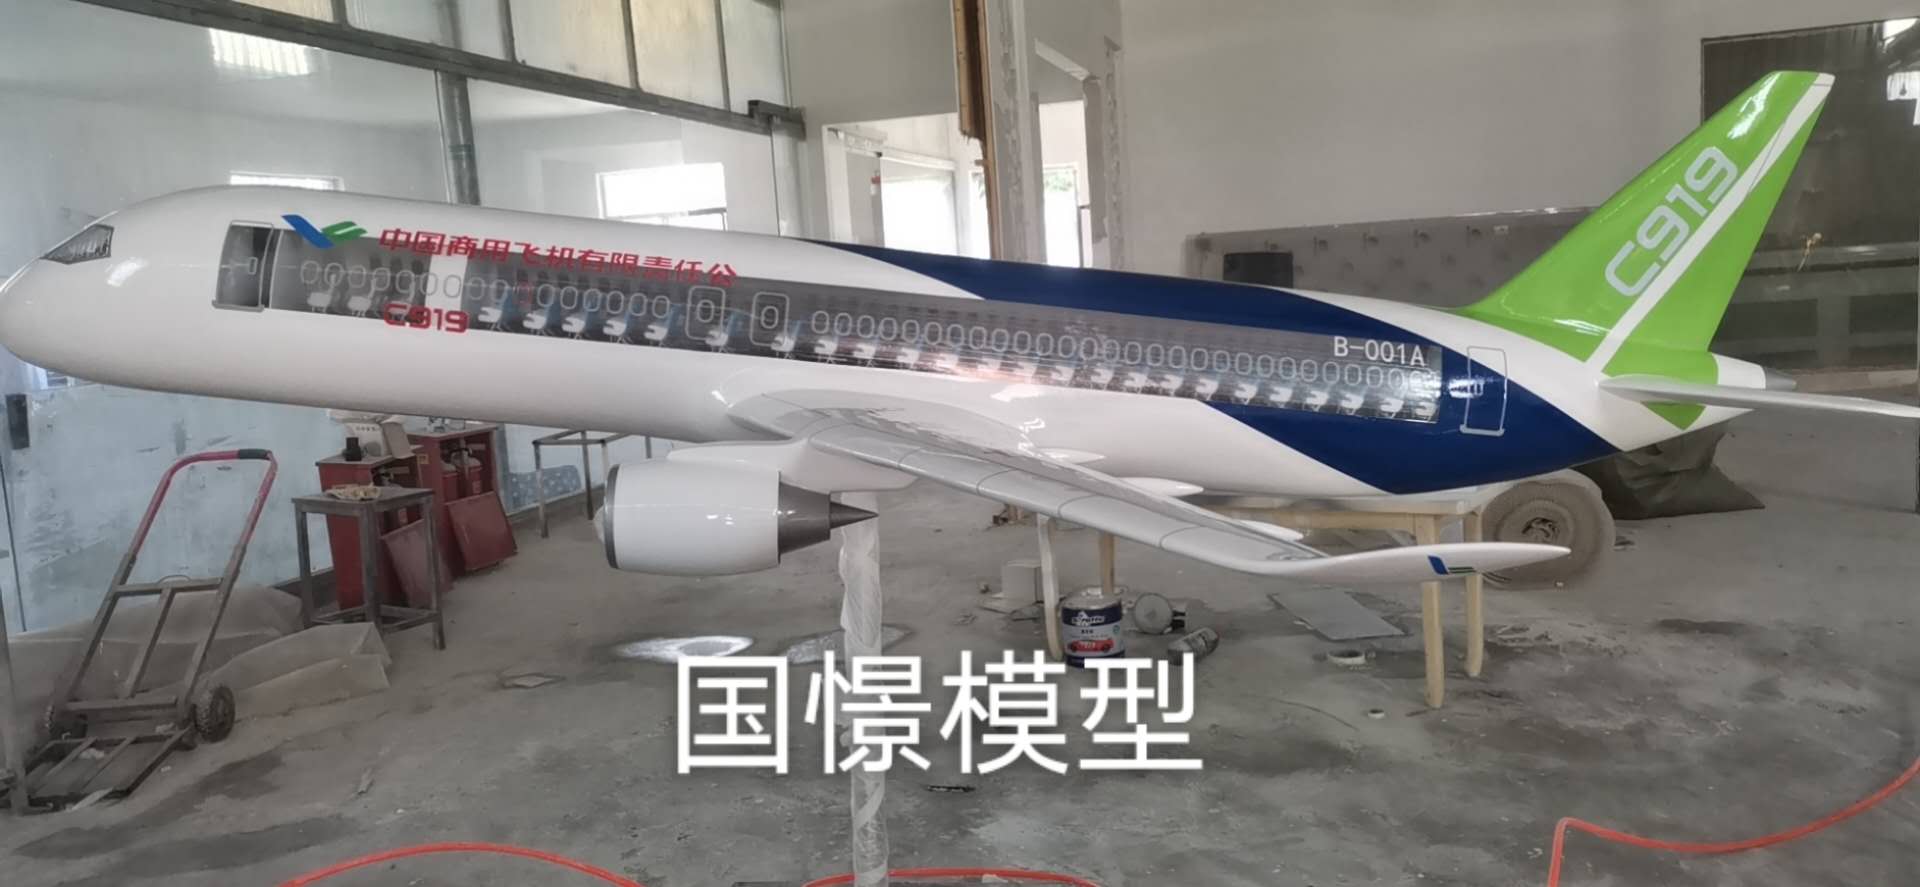 苍梧县飞机模型